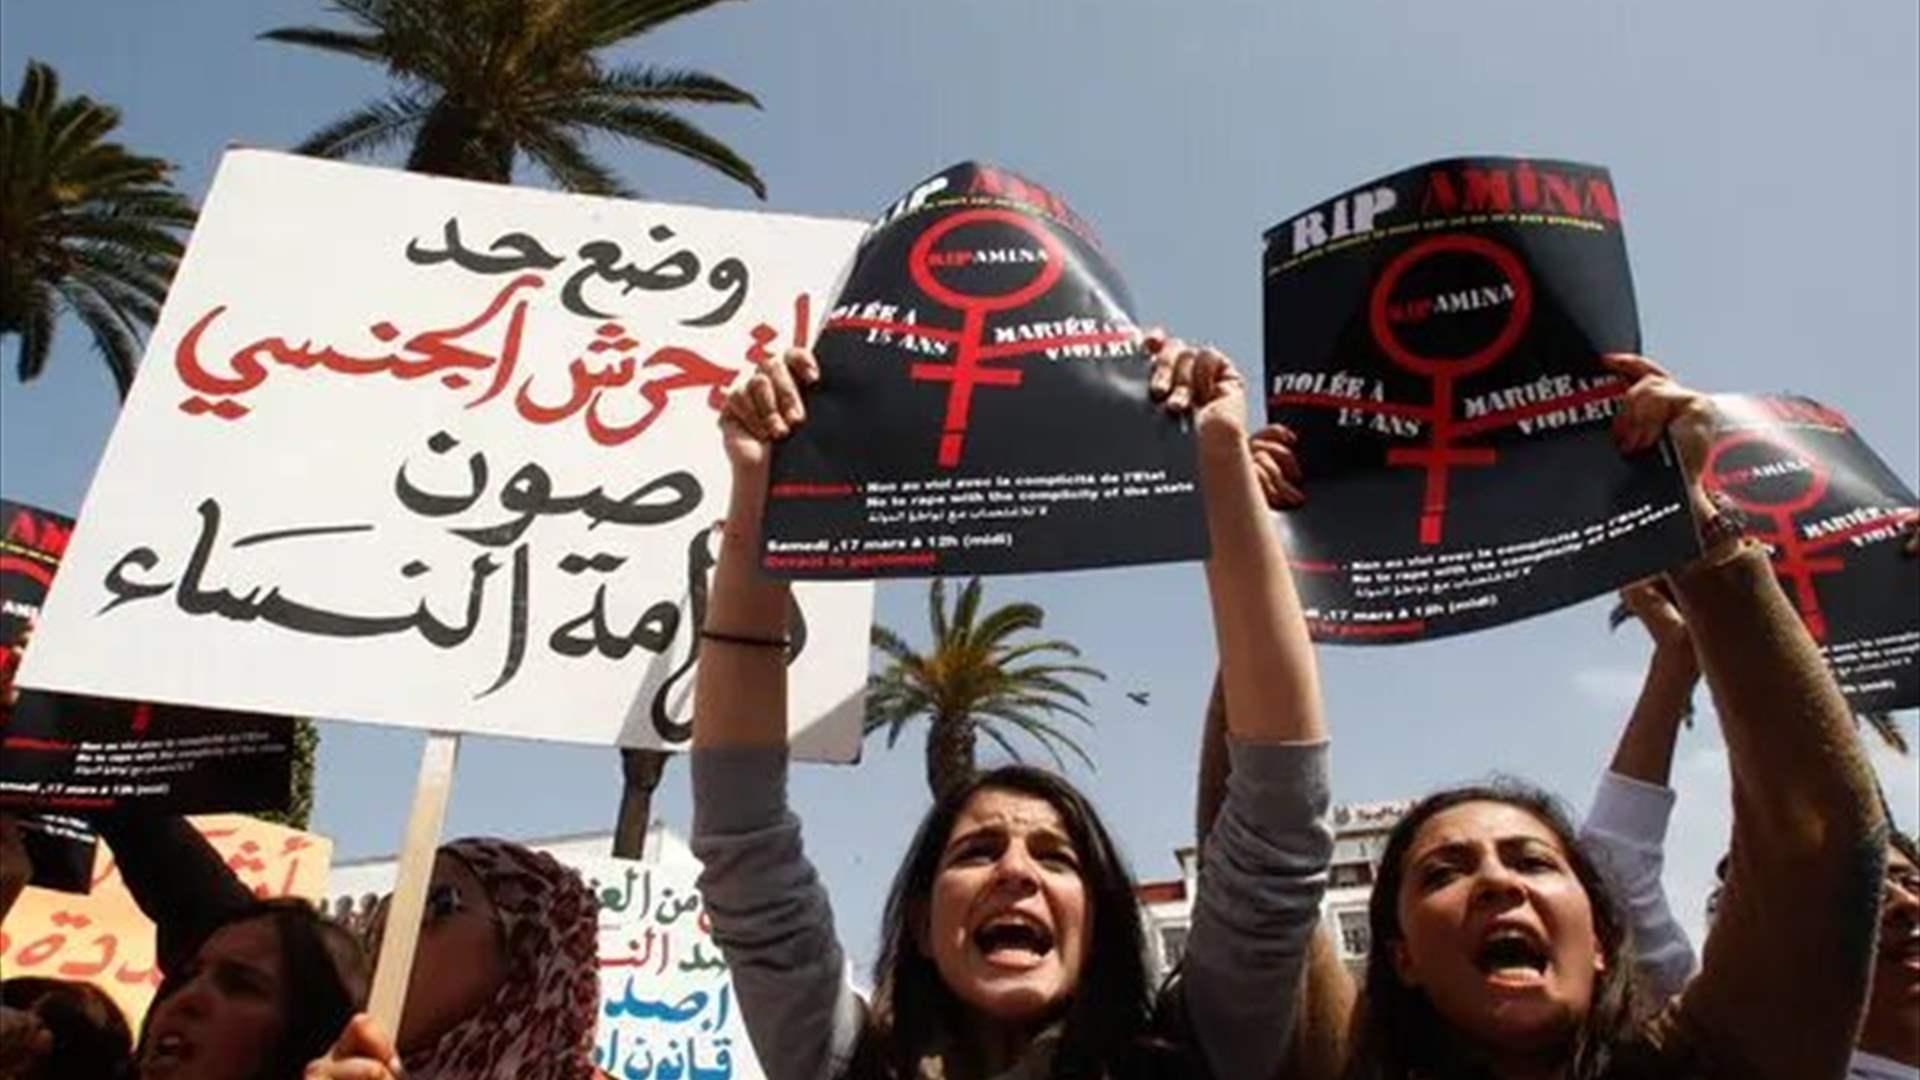 نساء شهيرات مغربيات يطلقن حملة رقمية لتغيير قوانين "مجحفة بحق النساء في المملكة"